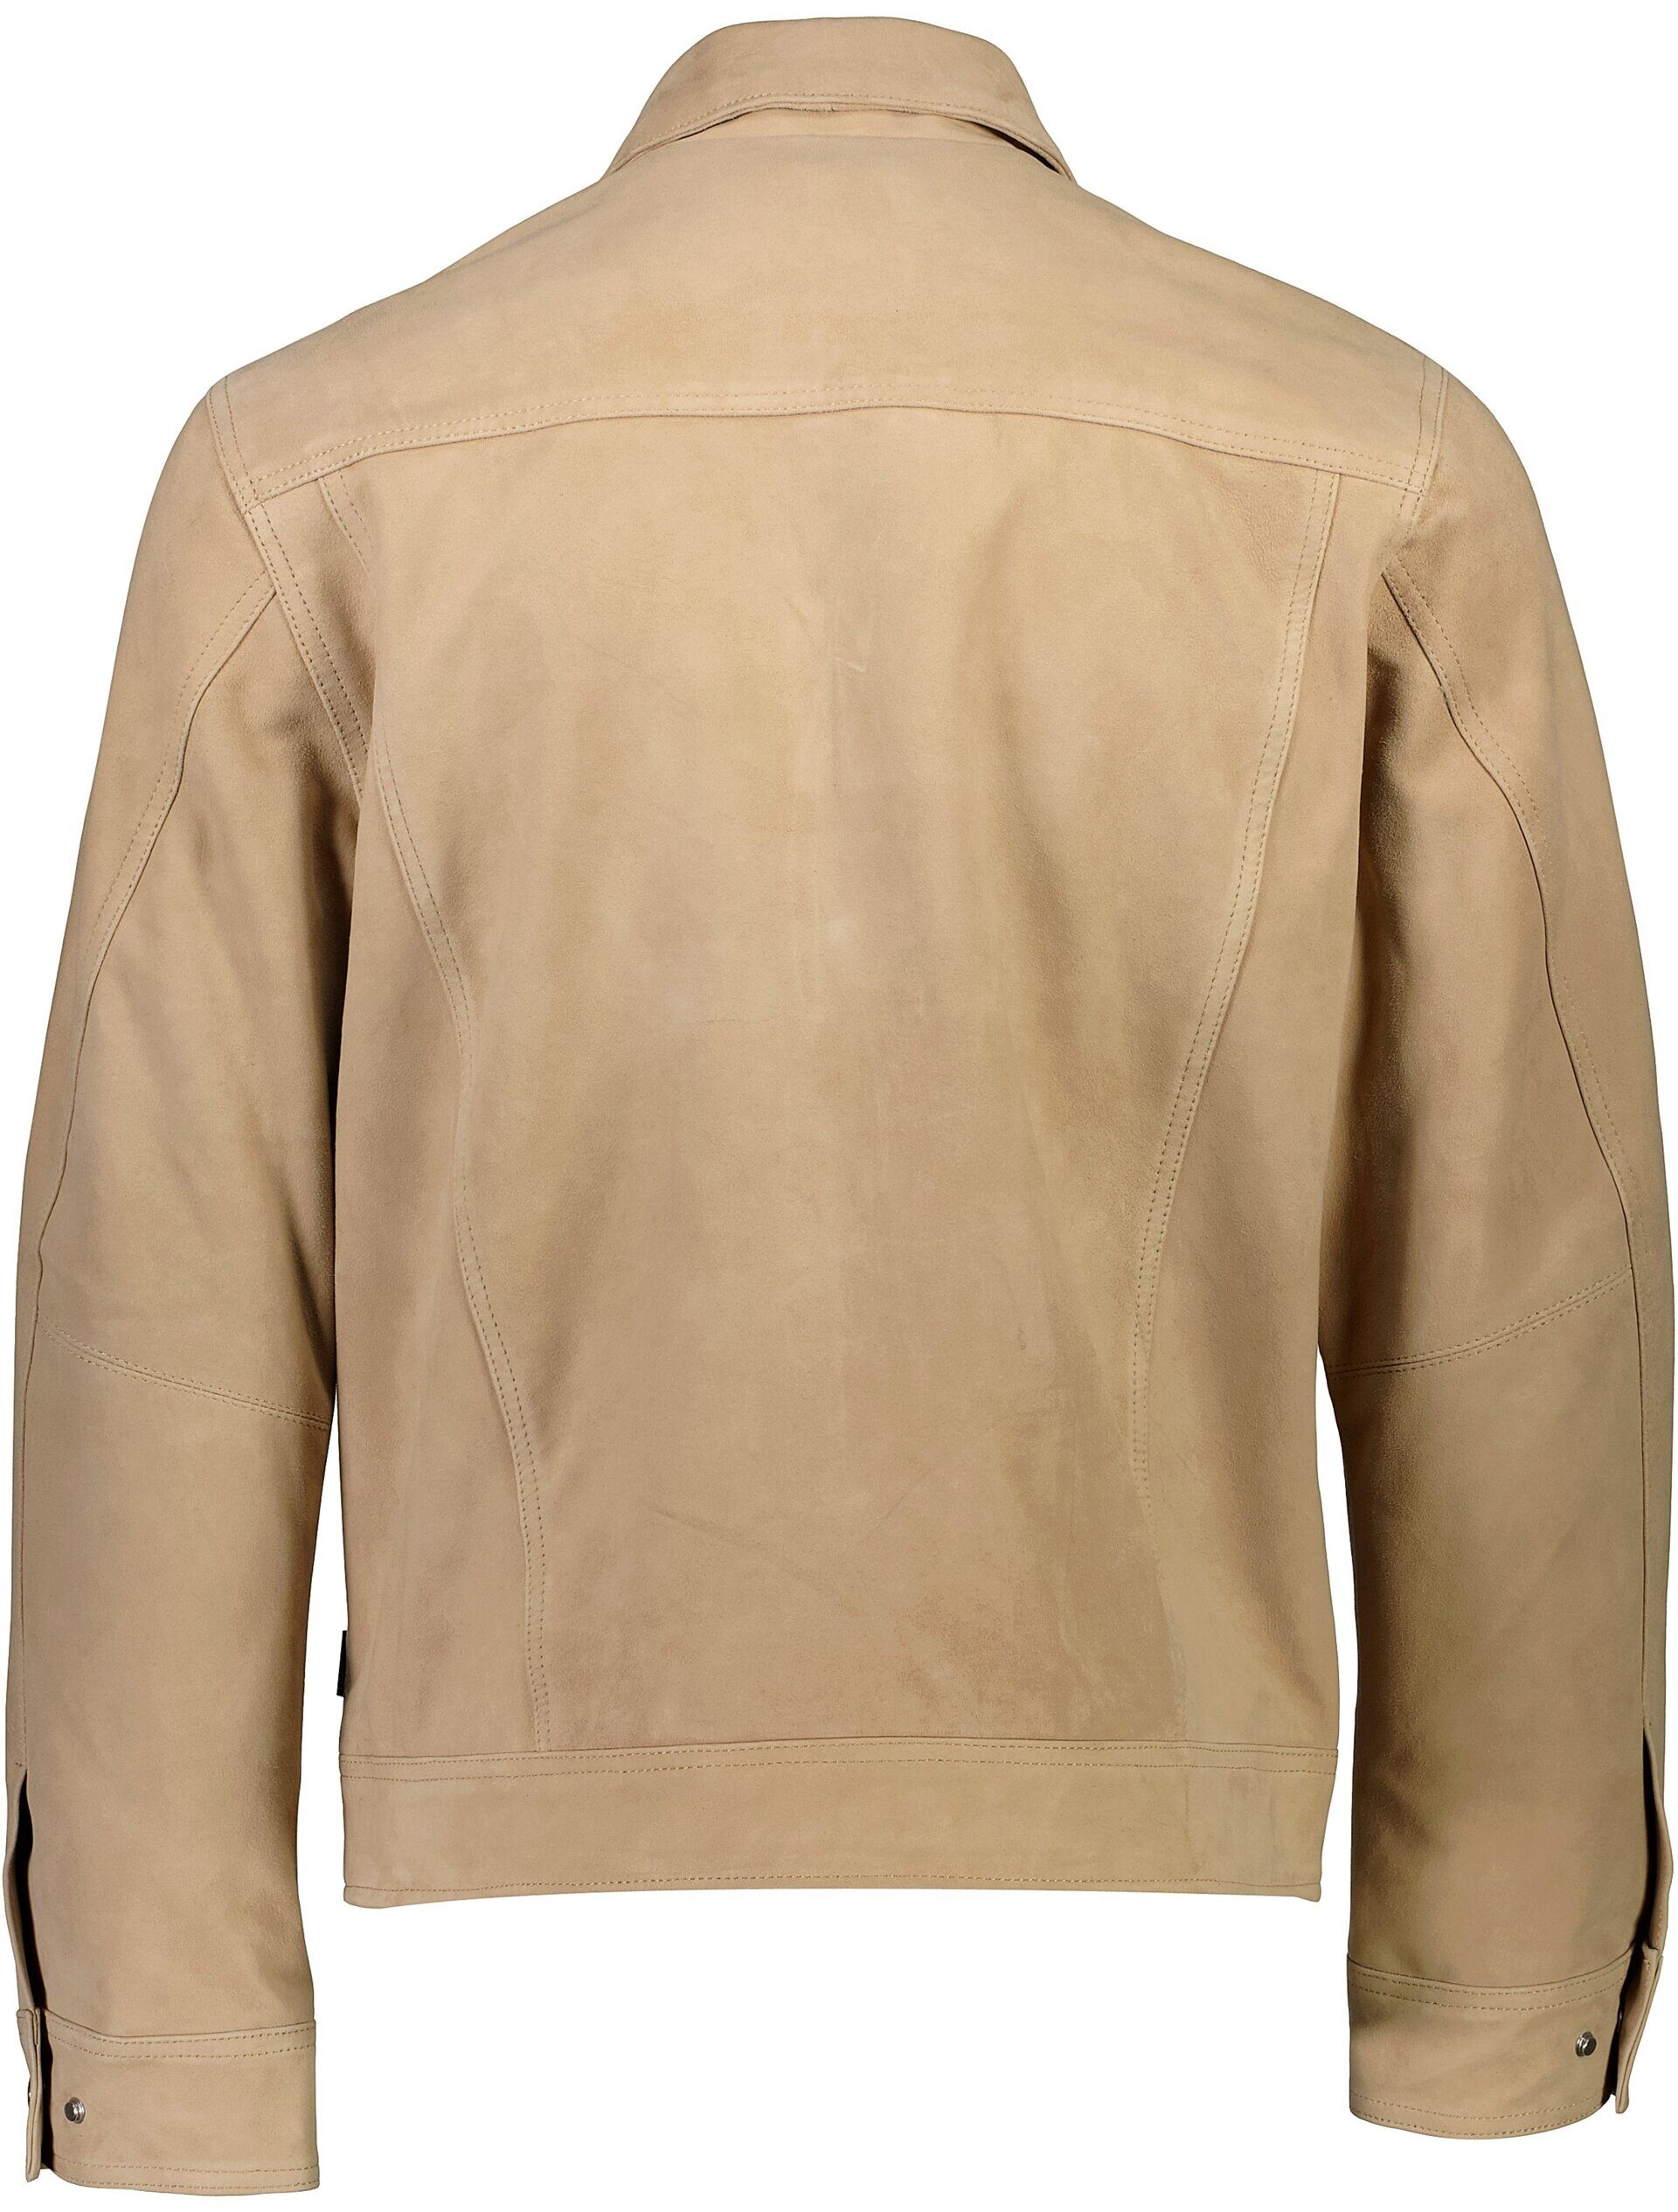 Leather jacket 60-152010